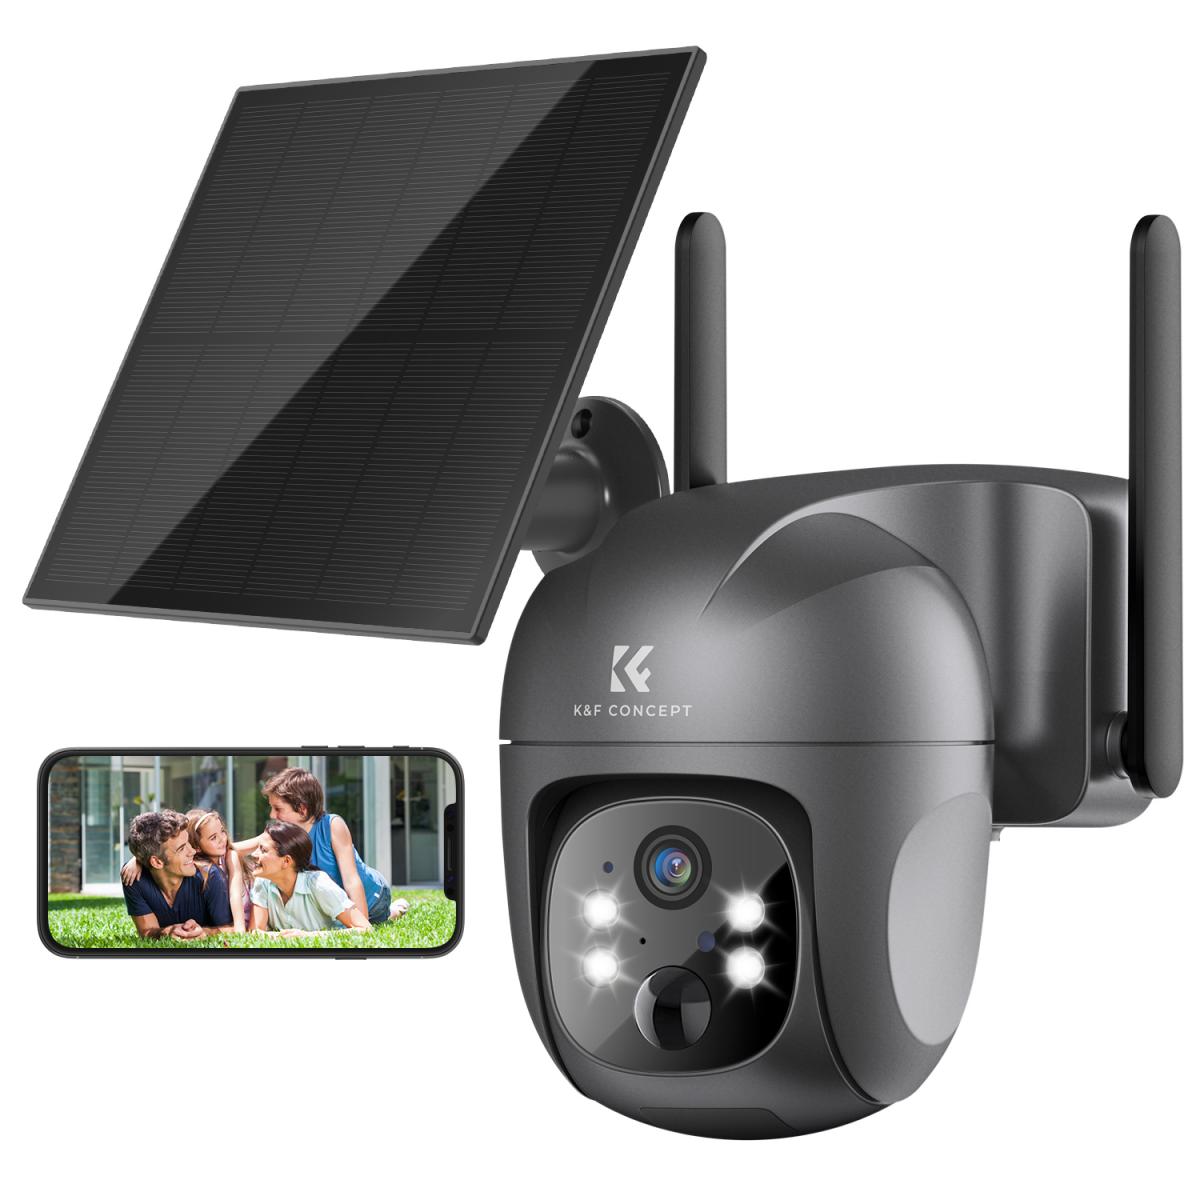 Caméra IP Samsung : gardez un oeil sur votre maison avec votre smartphone